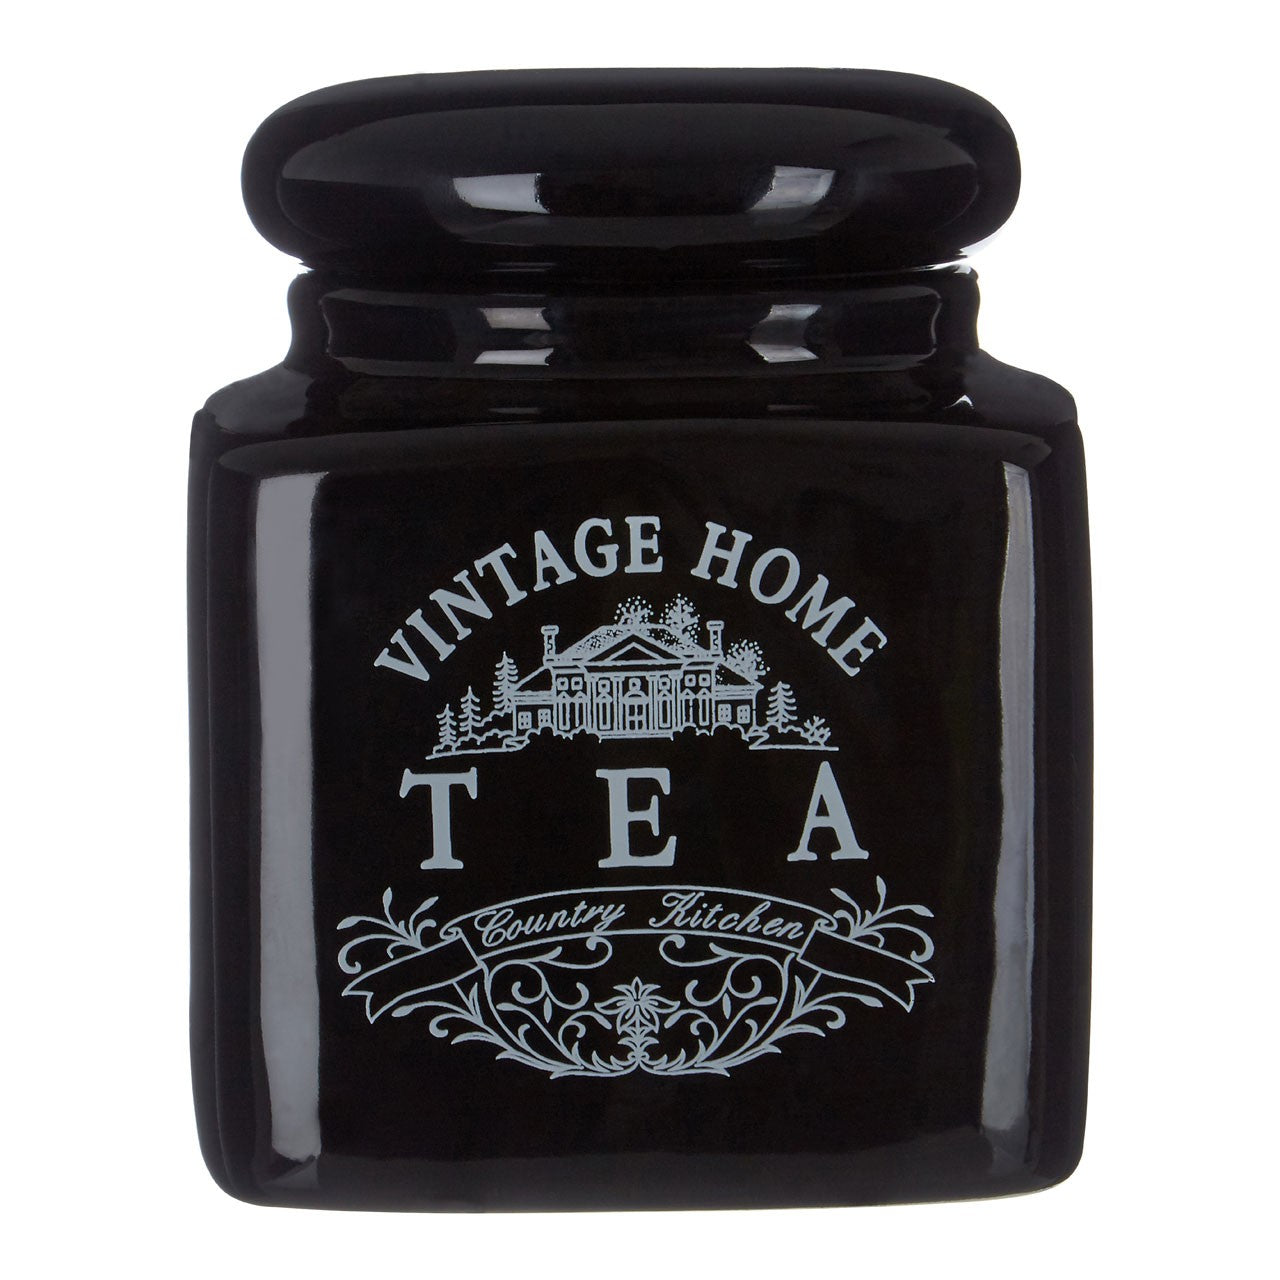 Vintage Home Black Tea Jar